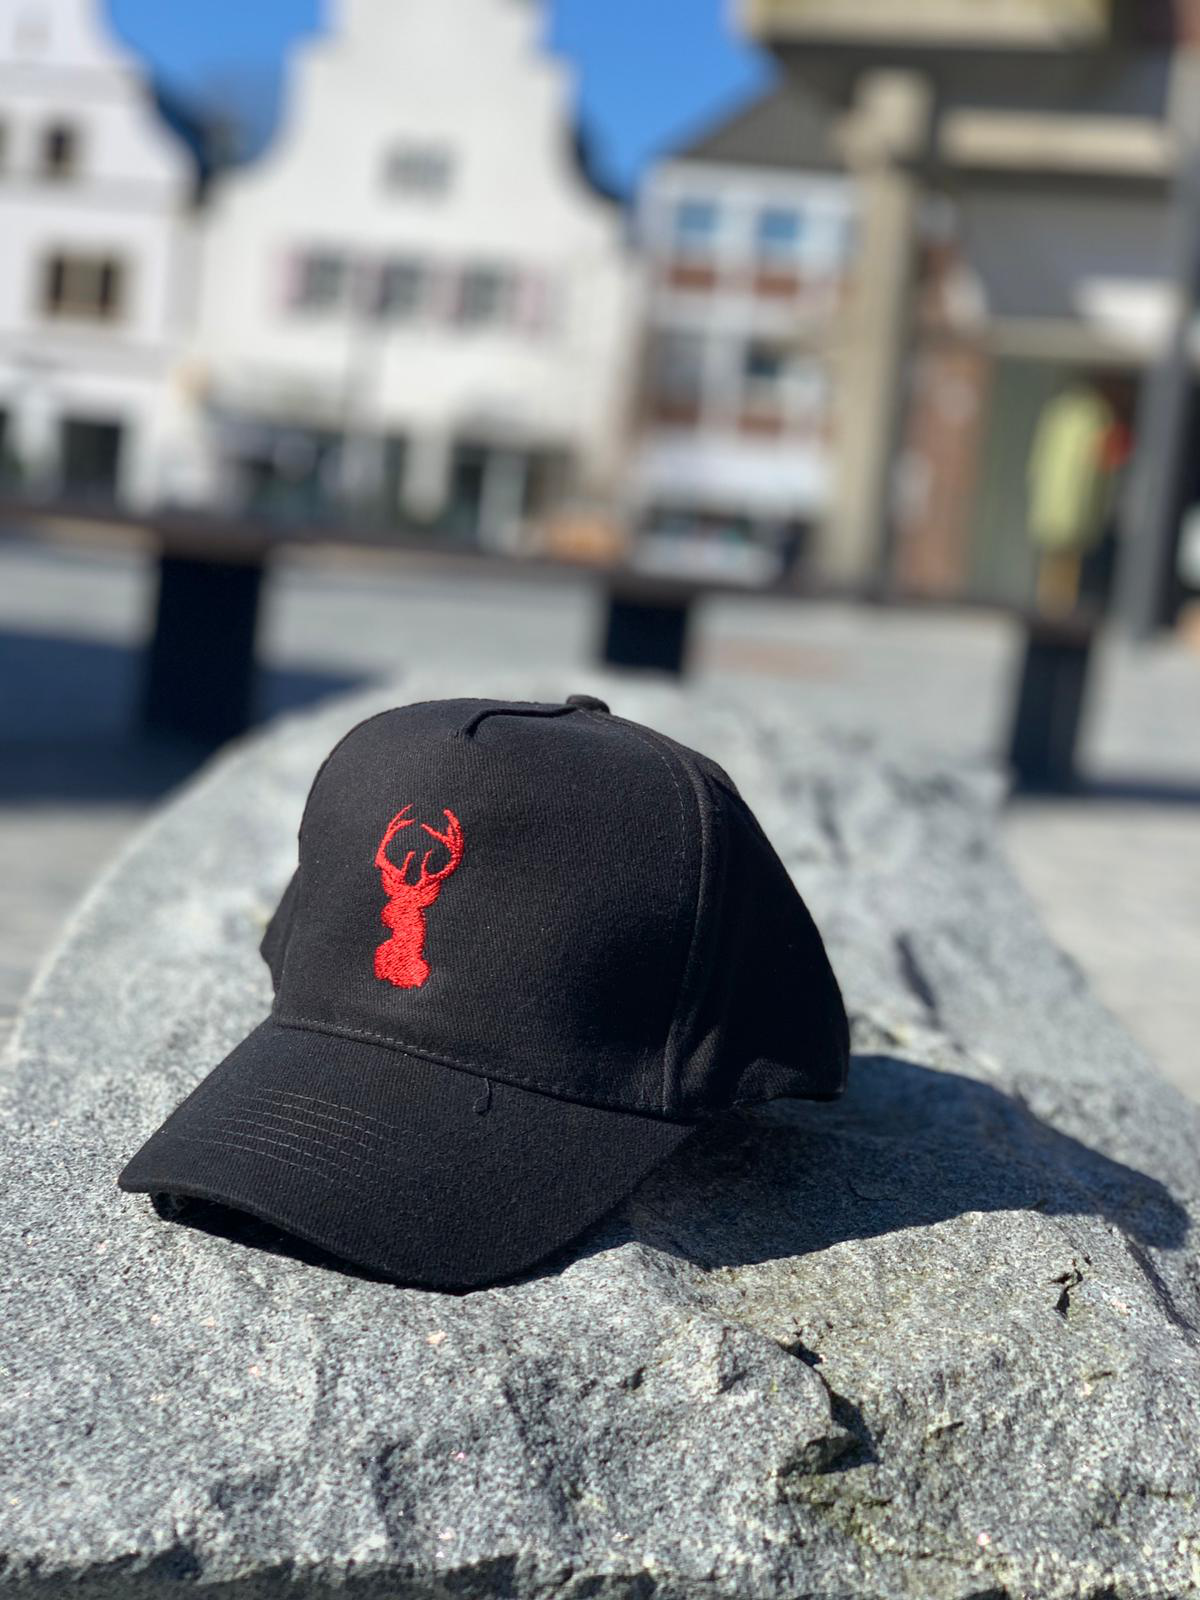 roter hirsch - Cap / Schirmmütze in schwarz